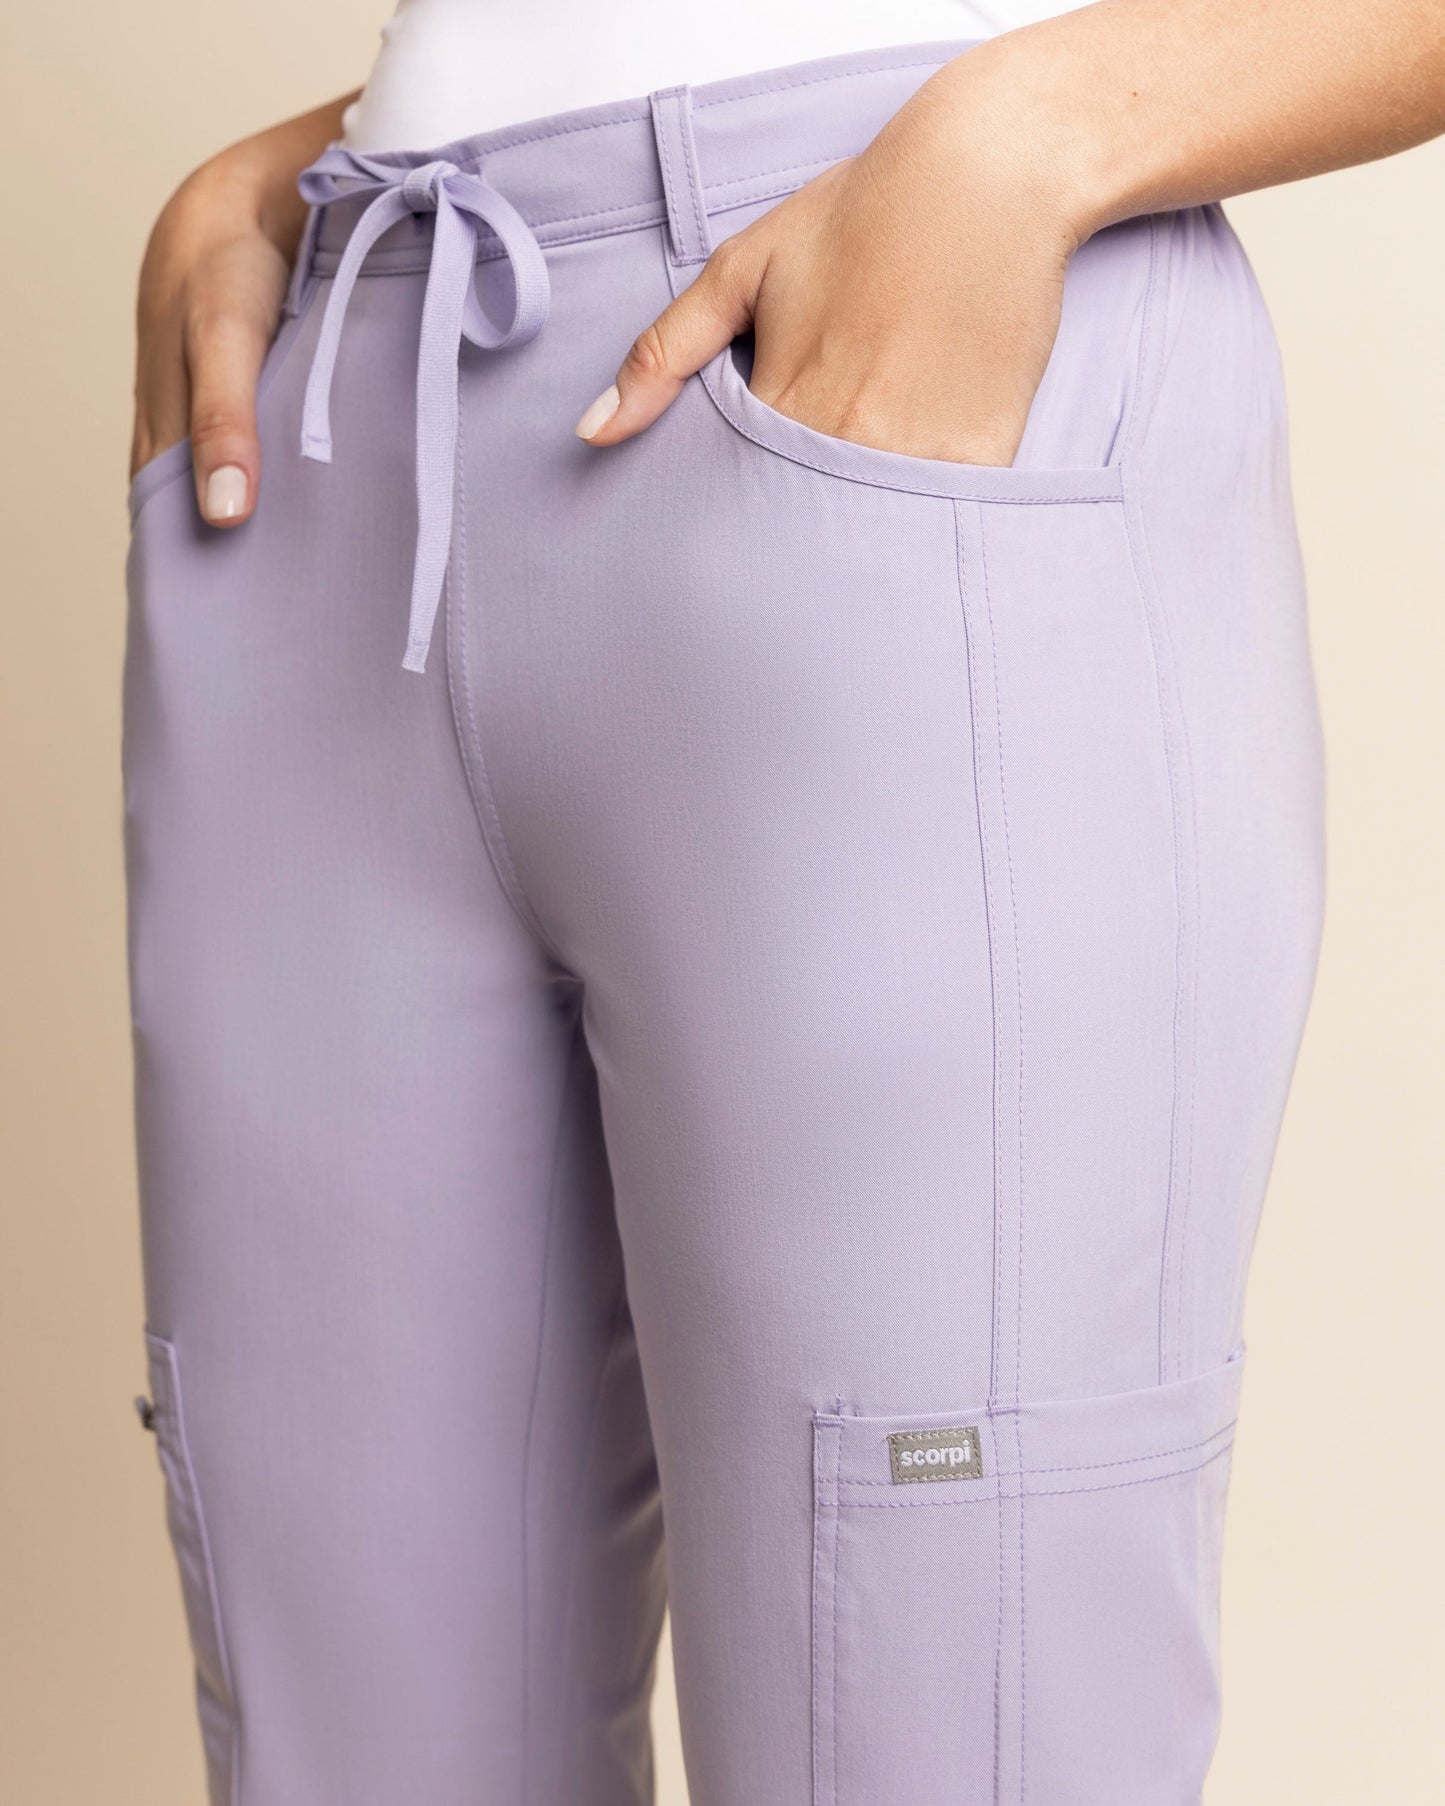 Pantalones cortos mujer baratos » Natural by Lila ®